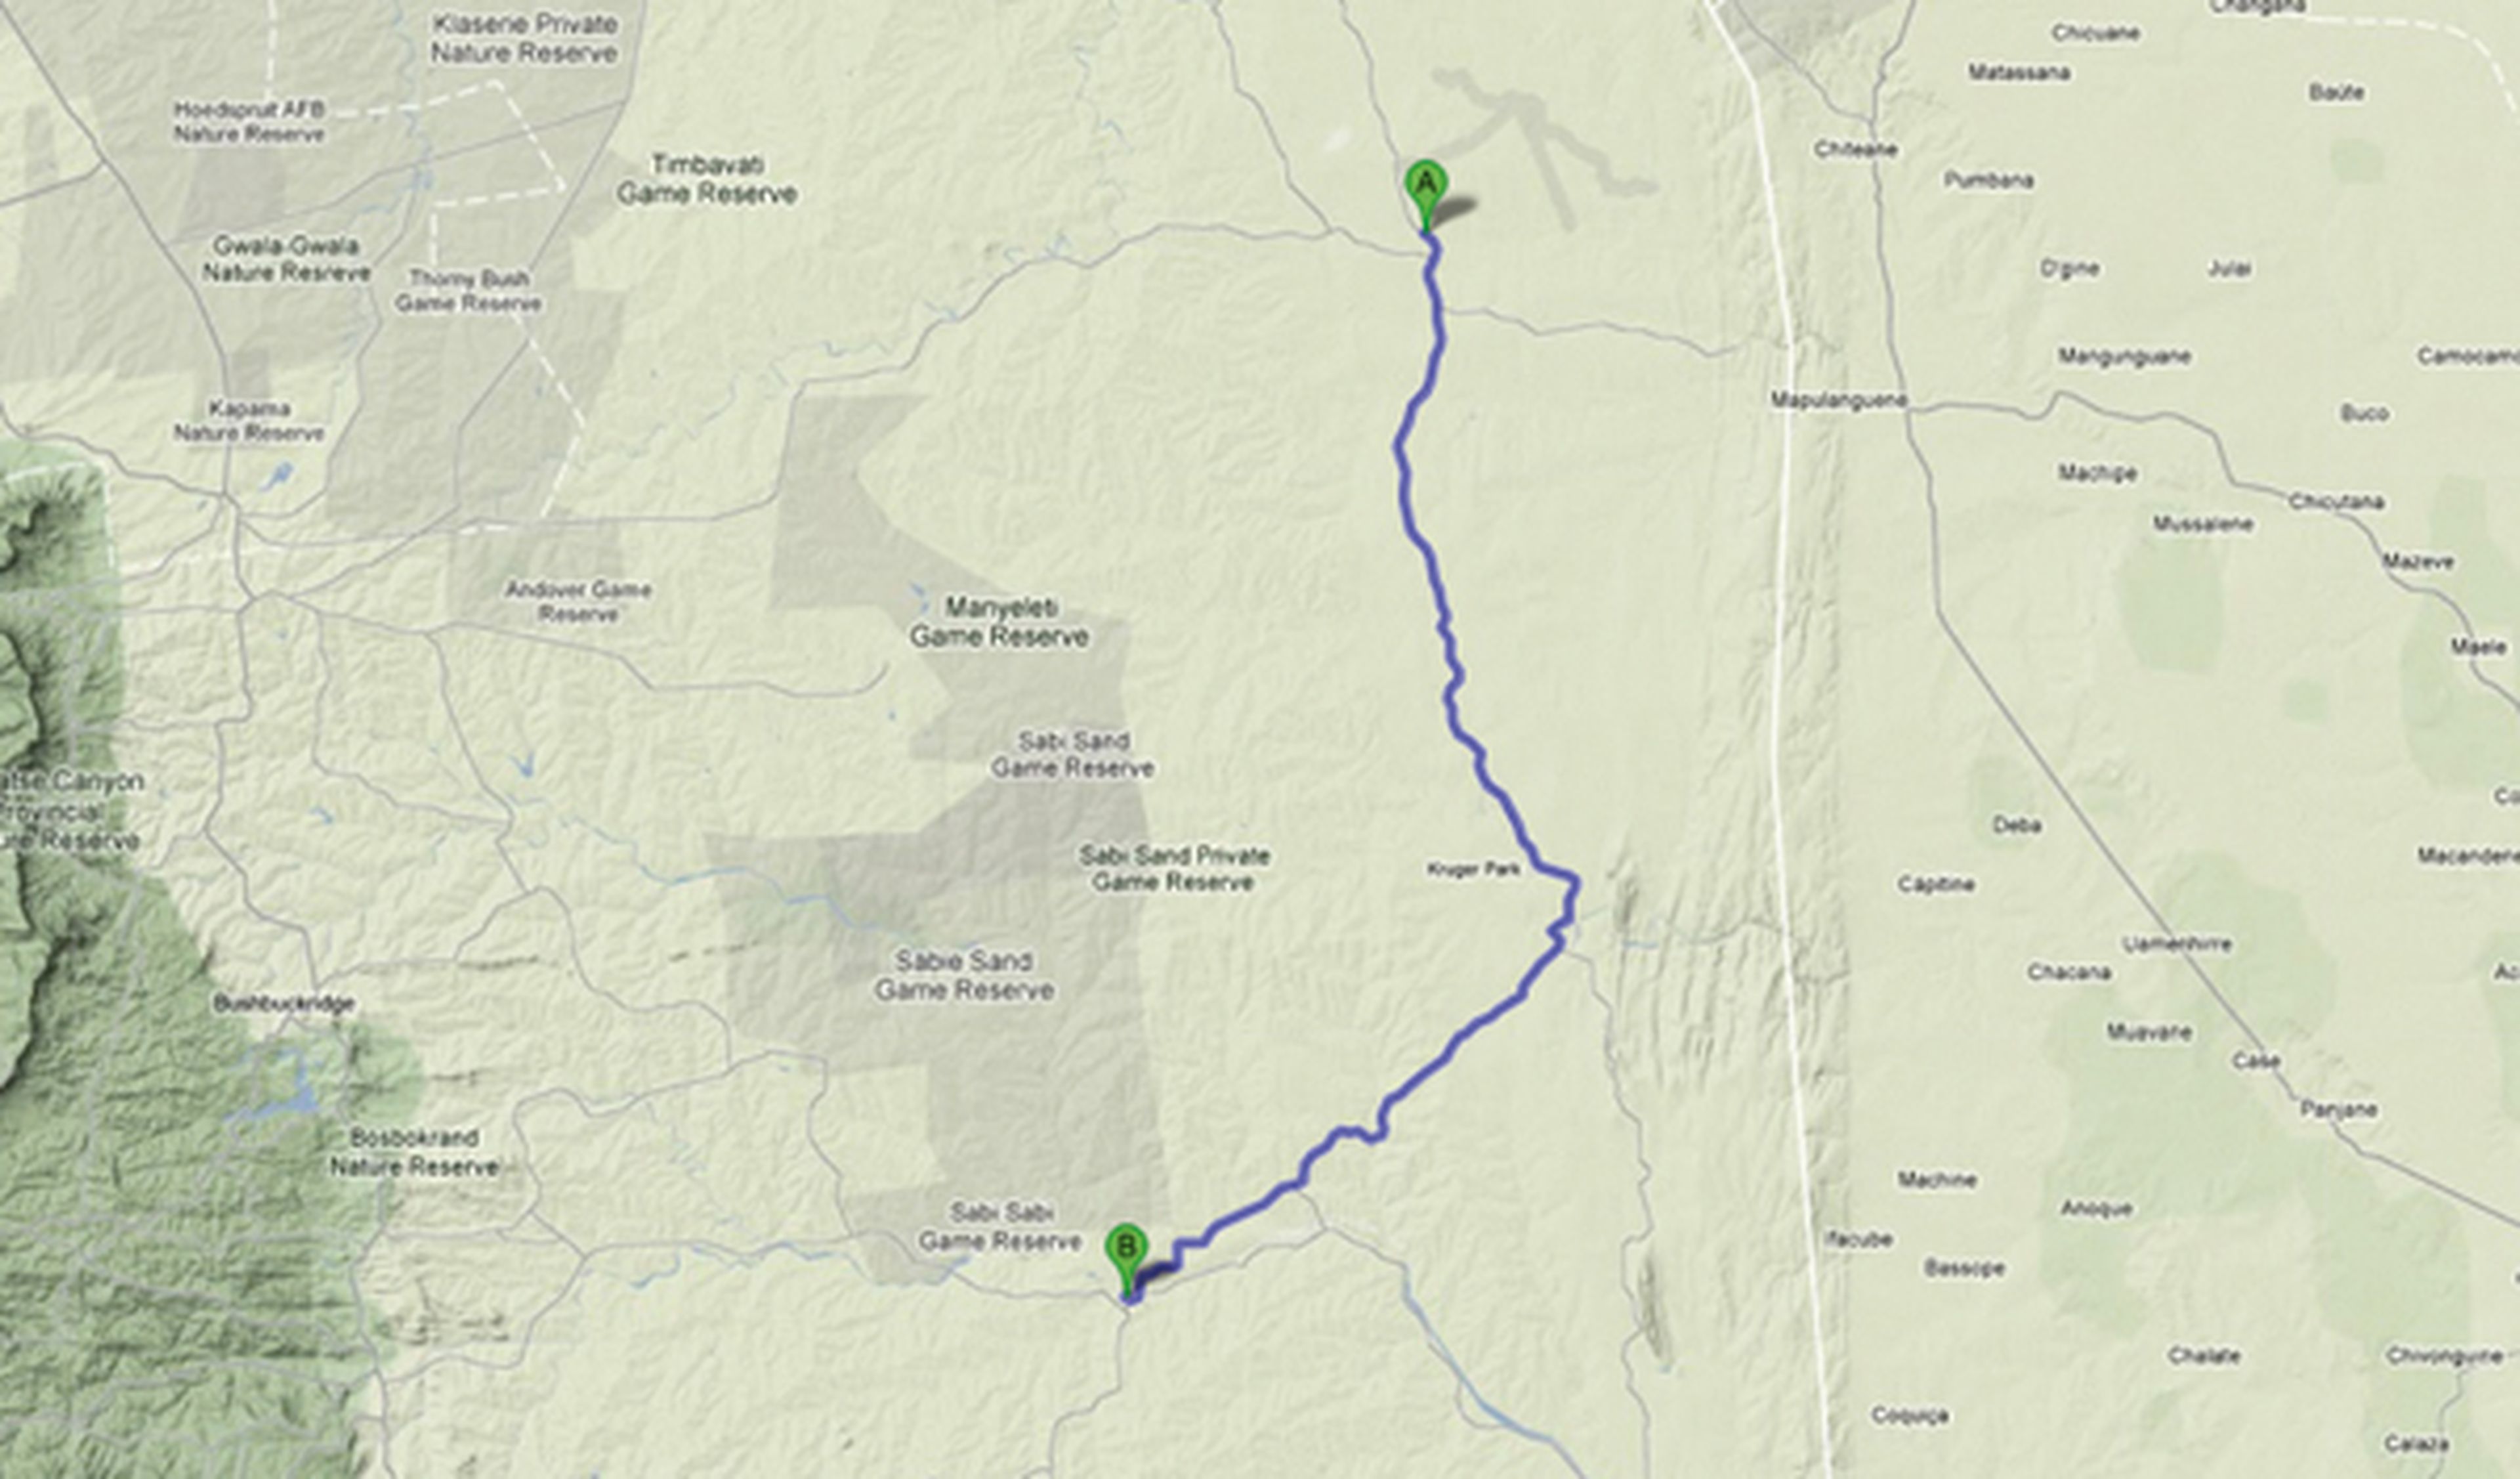 Viaje al Parque Nacional Kruger: regreso al edén